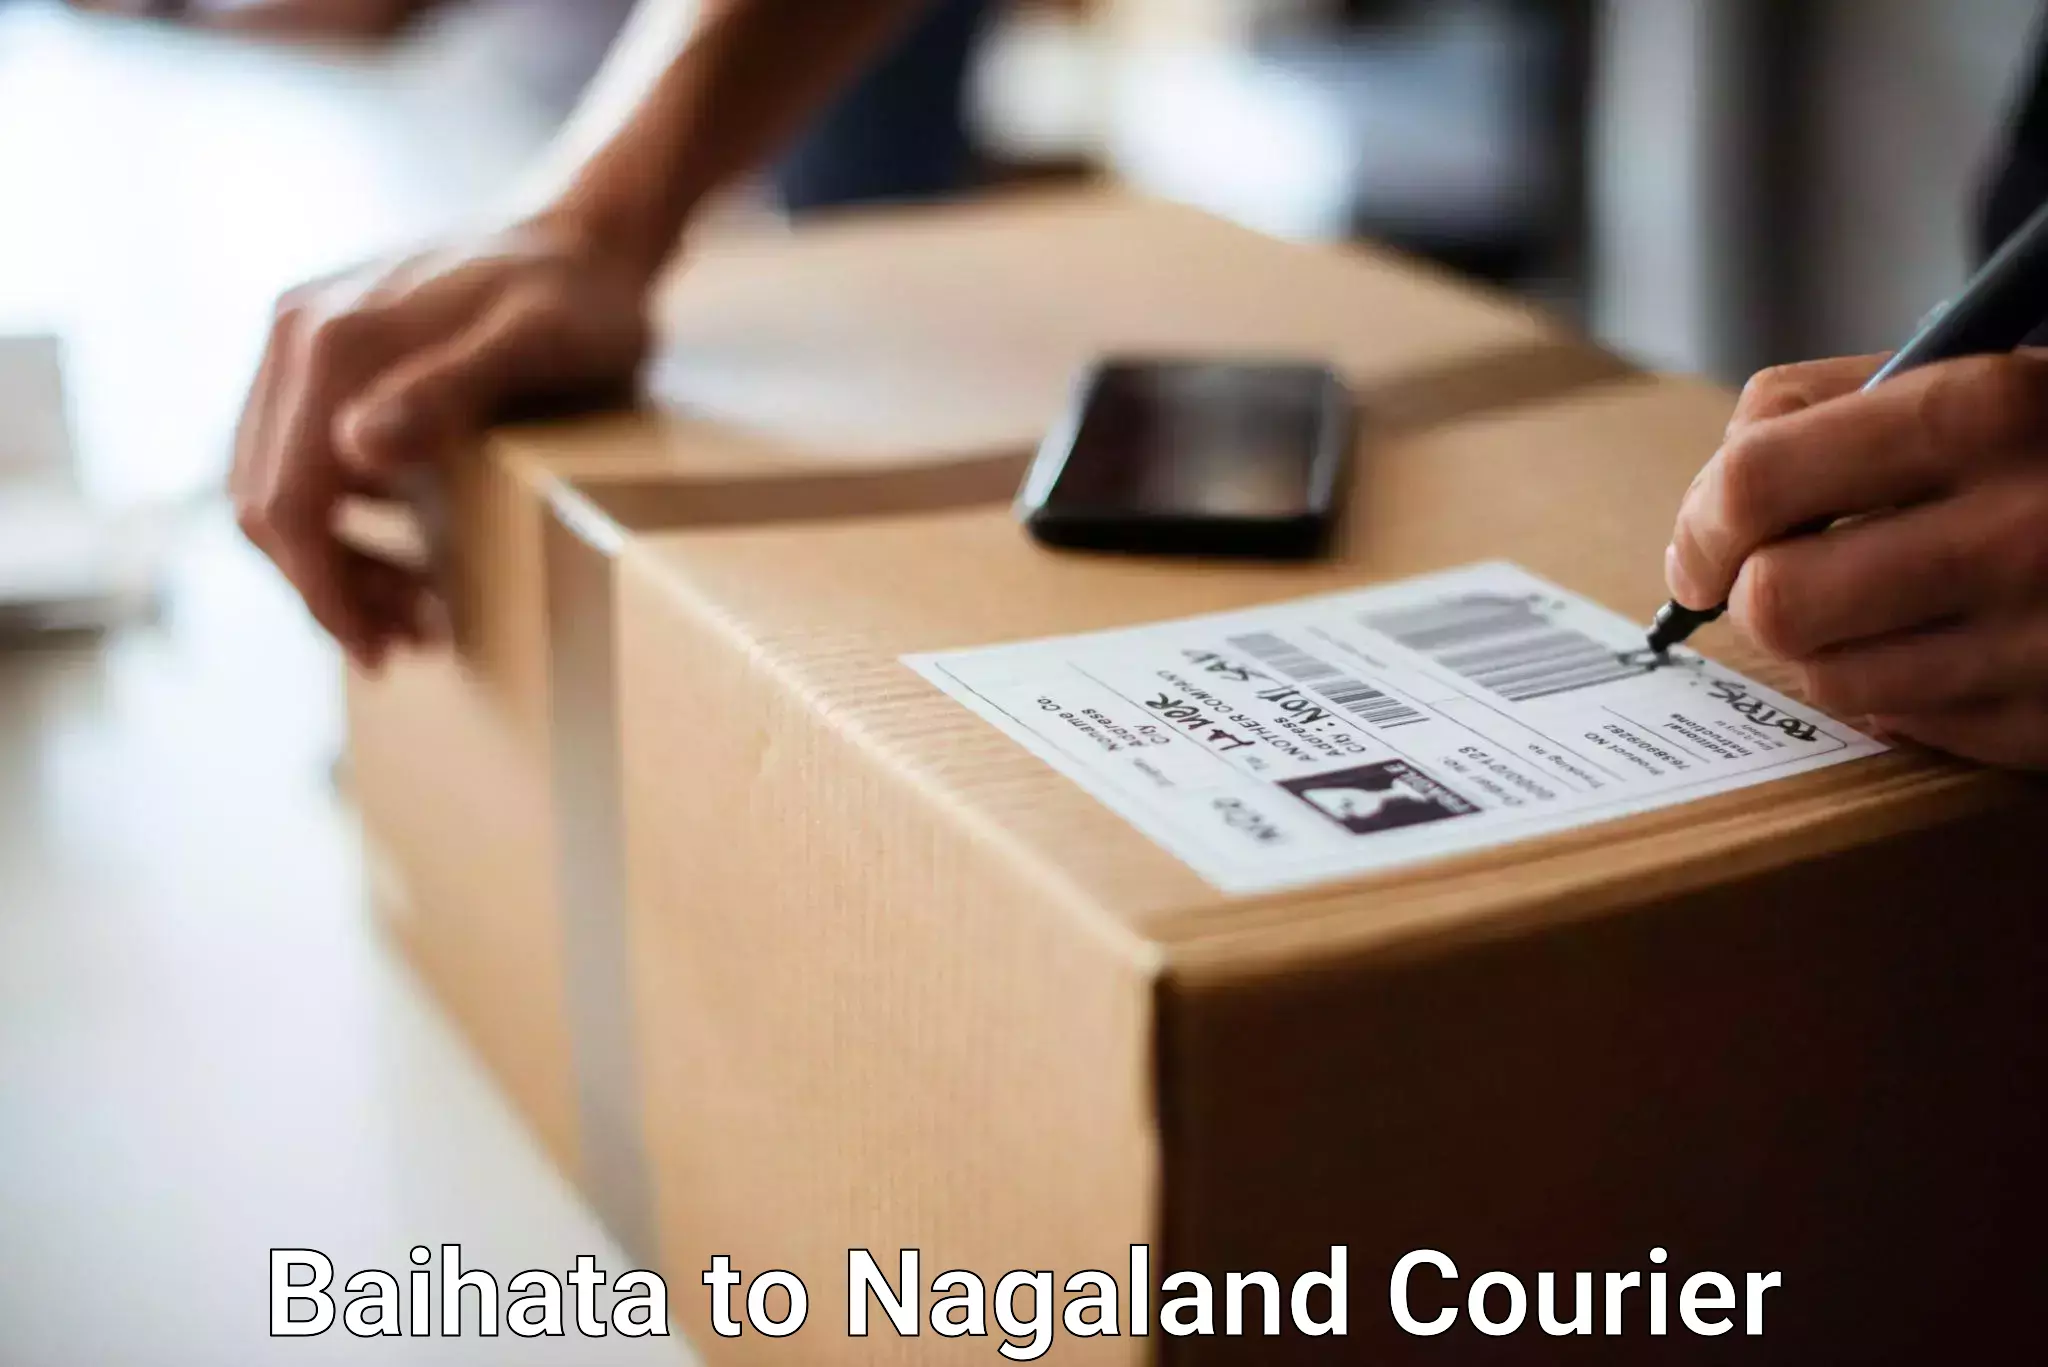 Baggage transport network Baihata to Nagaland